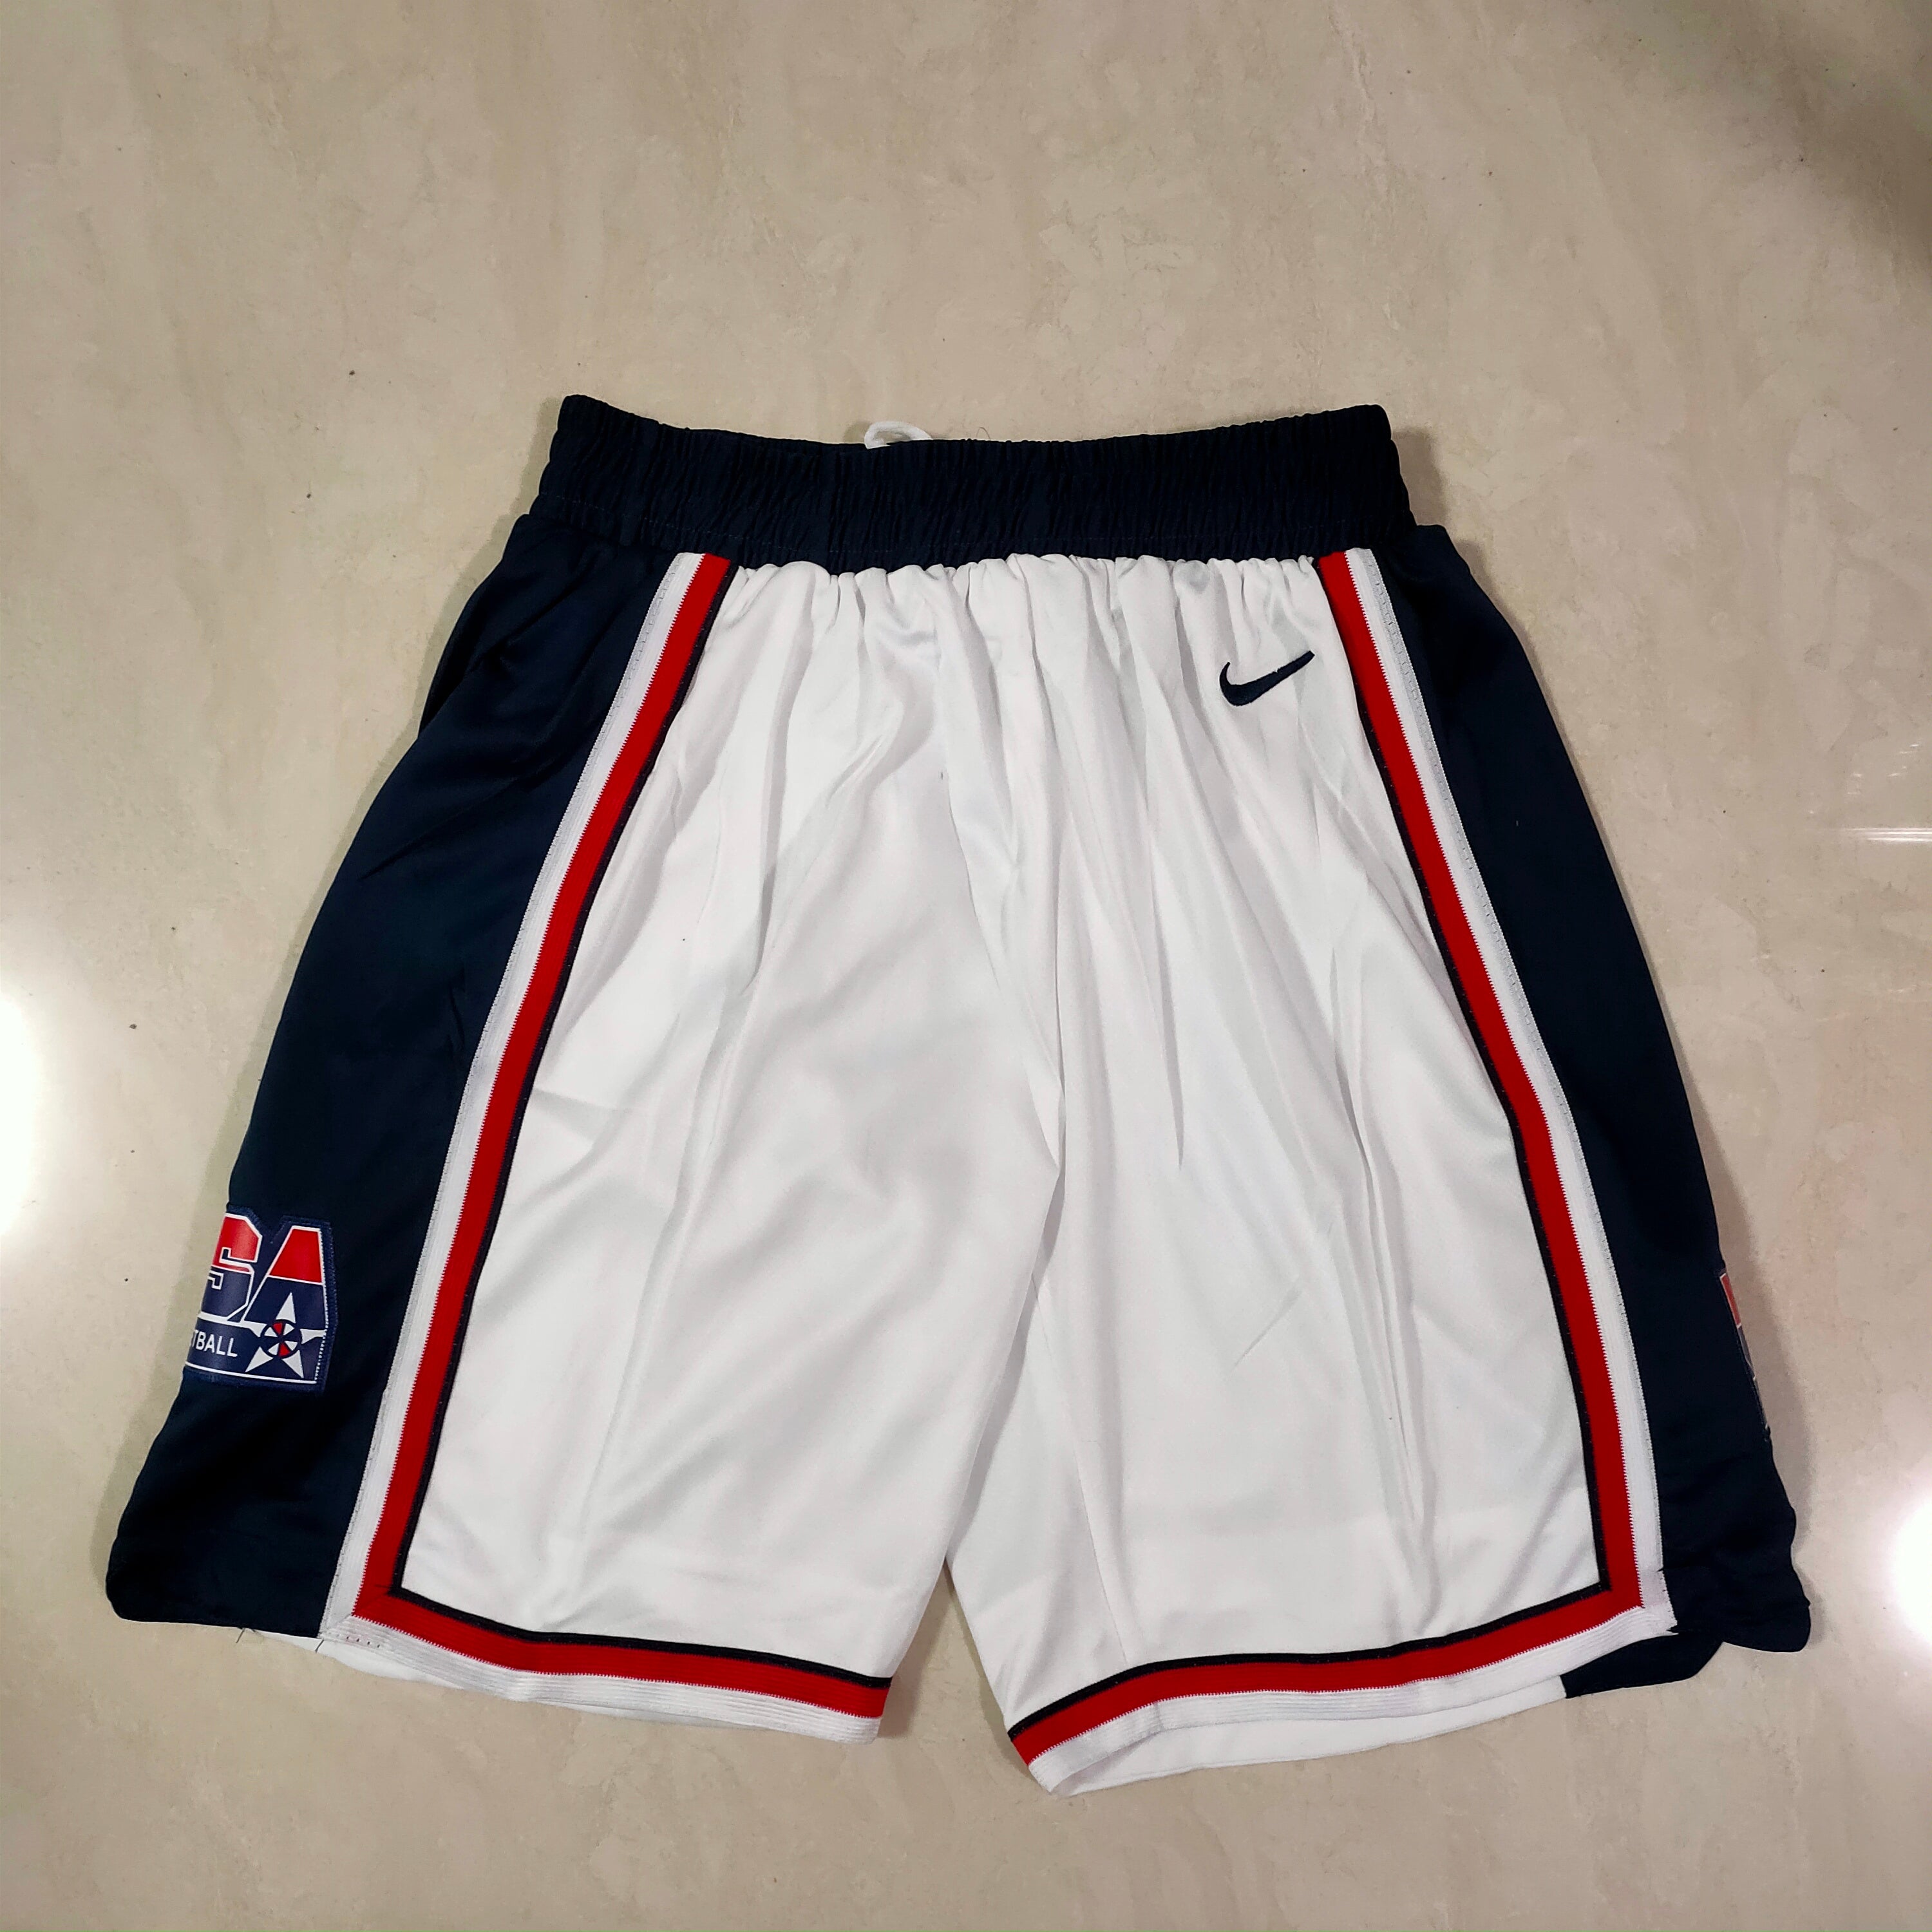 USA white shorts